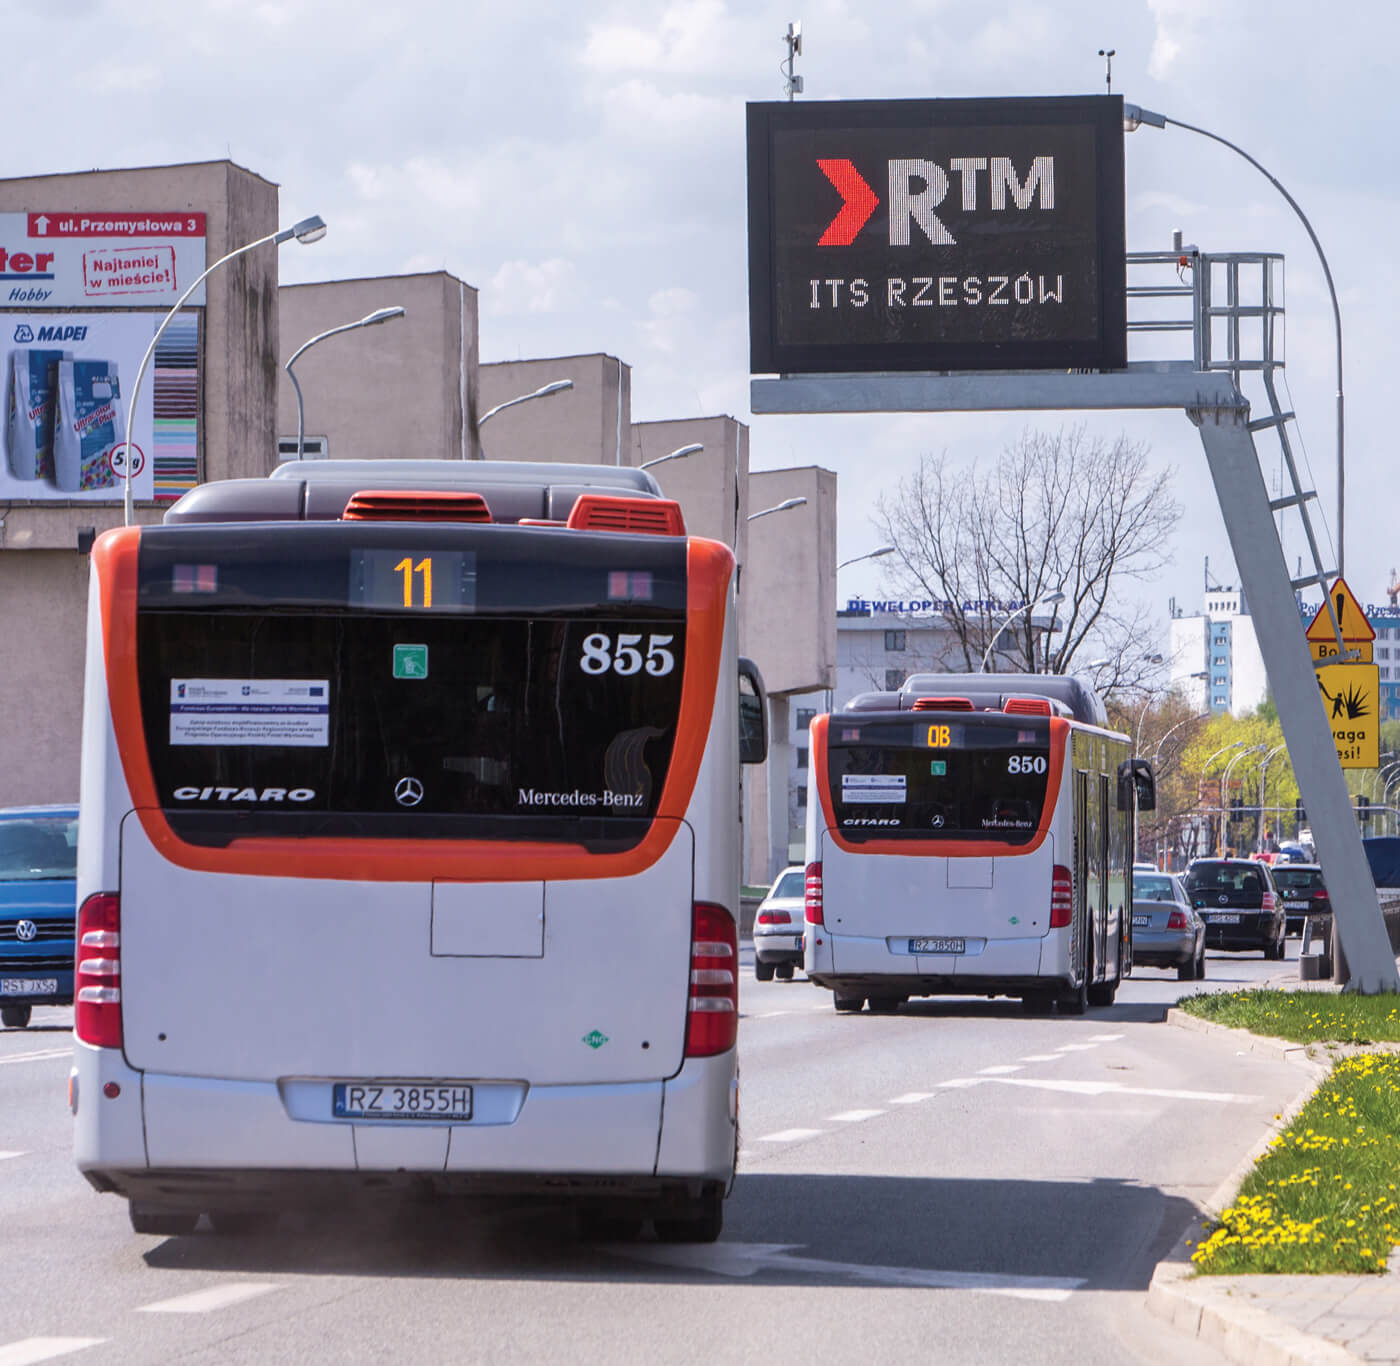 Aldesa - Intelligent Transport System in Rzeszów